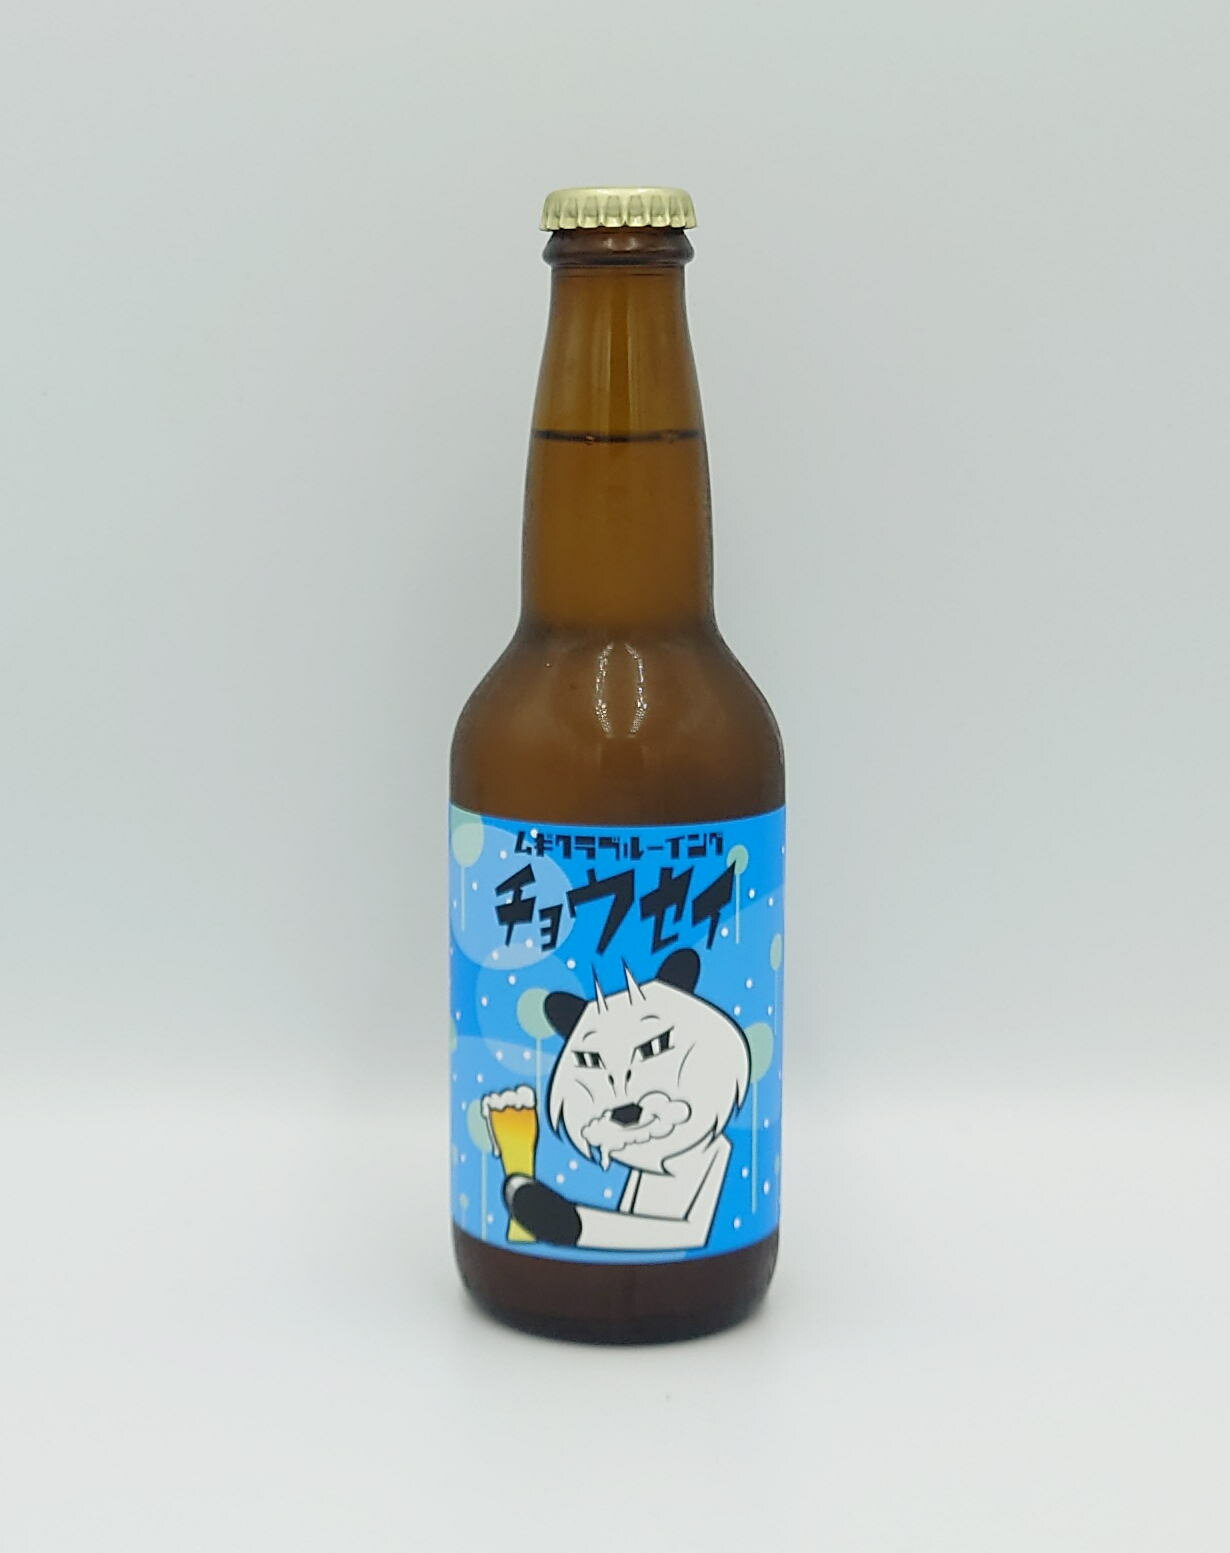 産地/長野県 製造元/田村醸造合同会社 保存方法/要冷蔵ムギクラブルーイングのオリジナルビール「チョウセイ」です。 ビールのスタイルは日本でも馴染み深いピルスナー。 ムギクラブルーイングでは、季節によって様々なアロマホップを使用します。 ピルスナーには「ザーツ」というホップが使われる事が多いのですが 今回のバッチは「カスケード」を使用しました。 どんな食べ物とも合わせやすいバランスの良い仕上がり ほのかなシトラス感がさらなる爽快さを演出しています。 爽快な喉越しが特徴のピルスナーで、食事との相性がとてもよく 最初の一杯としておすすめ！